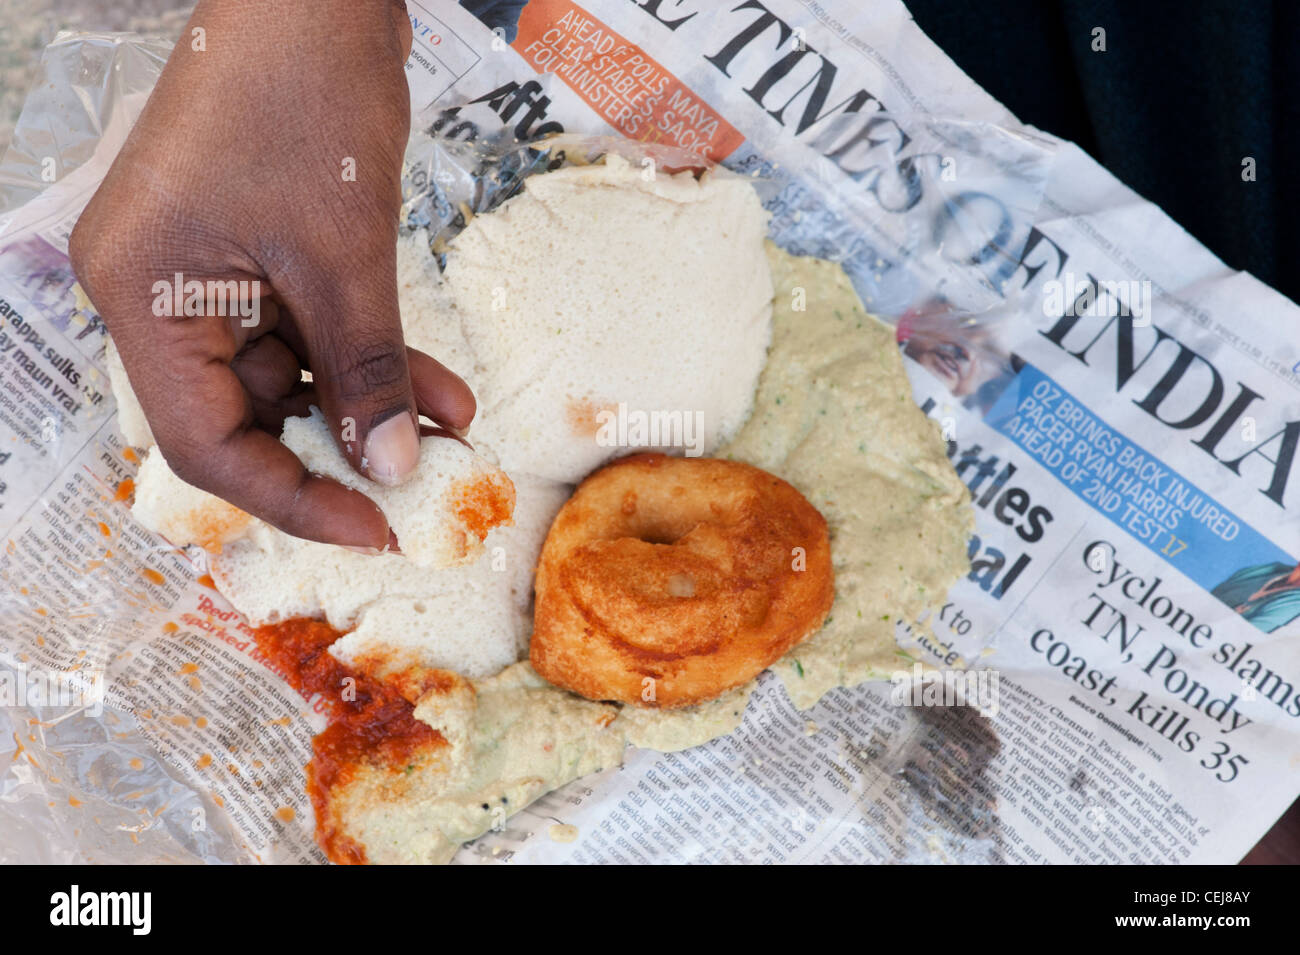 Petit-déjeuner de l'Institut de l'Inde du Sud, à l'Ama une sex Chutney épicé emballés dans du papier journal. L'Andhra Pradesh, Inde Banque D'Images